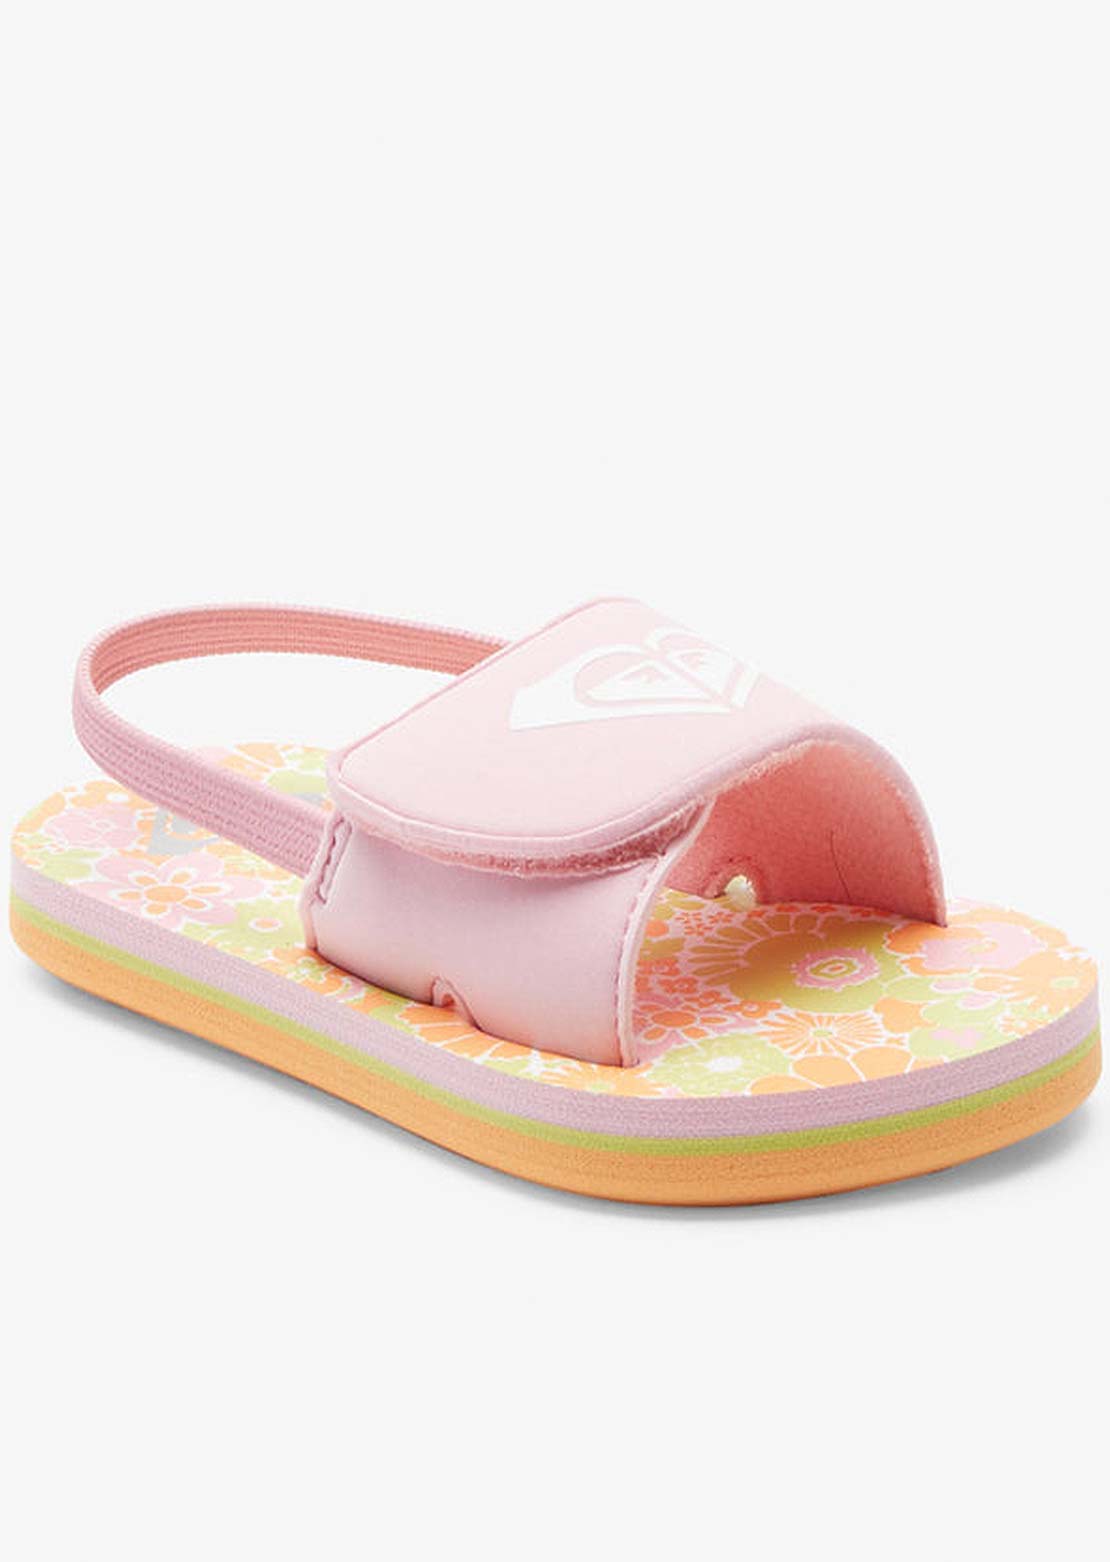 Roxy Toddler TW Finn Sandals White/Orange/Pink